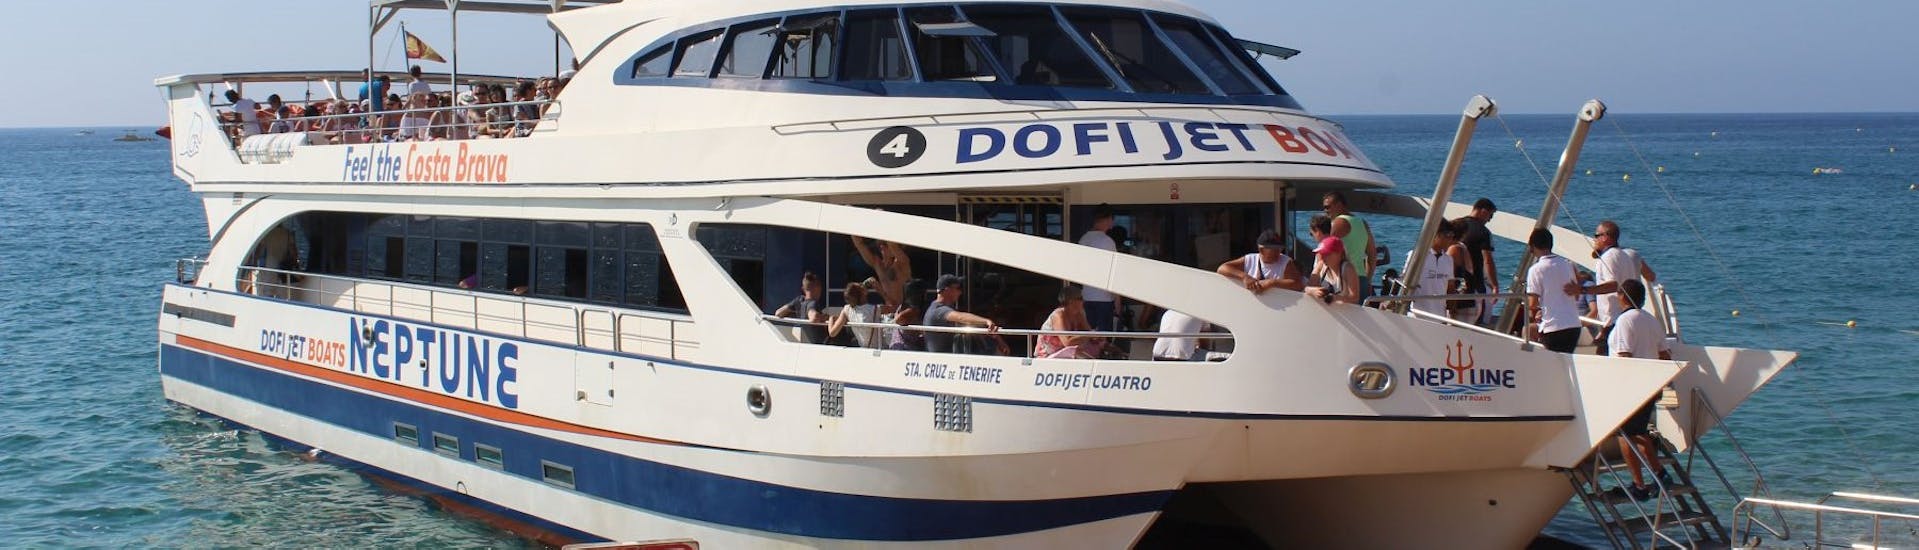 Le bateau utilisé lors de la Balade en bateau & bus le long de Costa Brava à Lloret de Mar & Tossa de Mar.